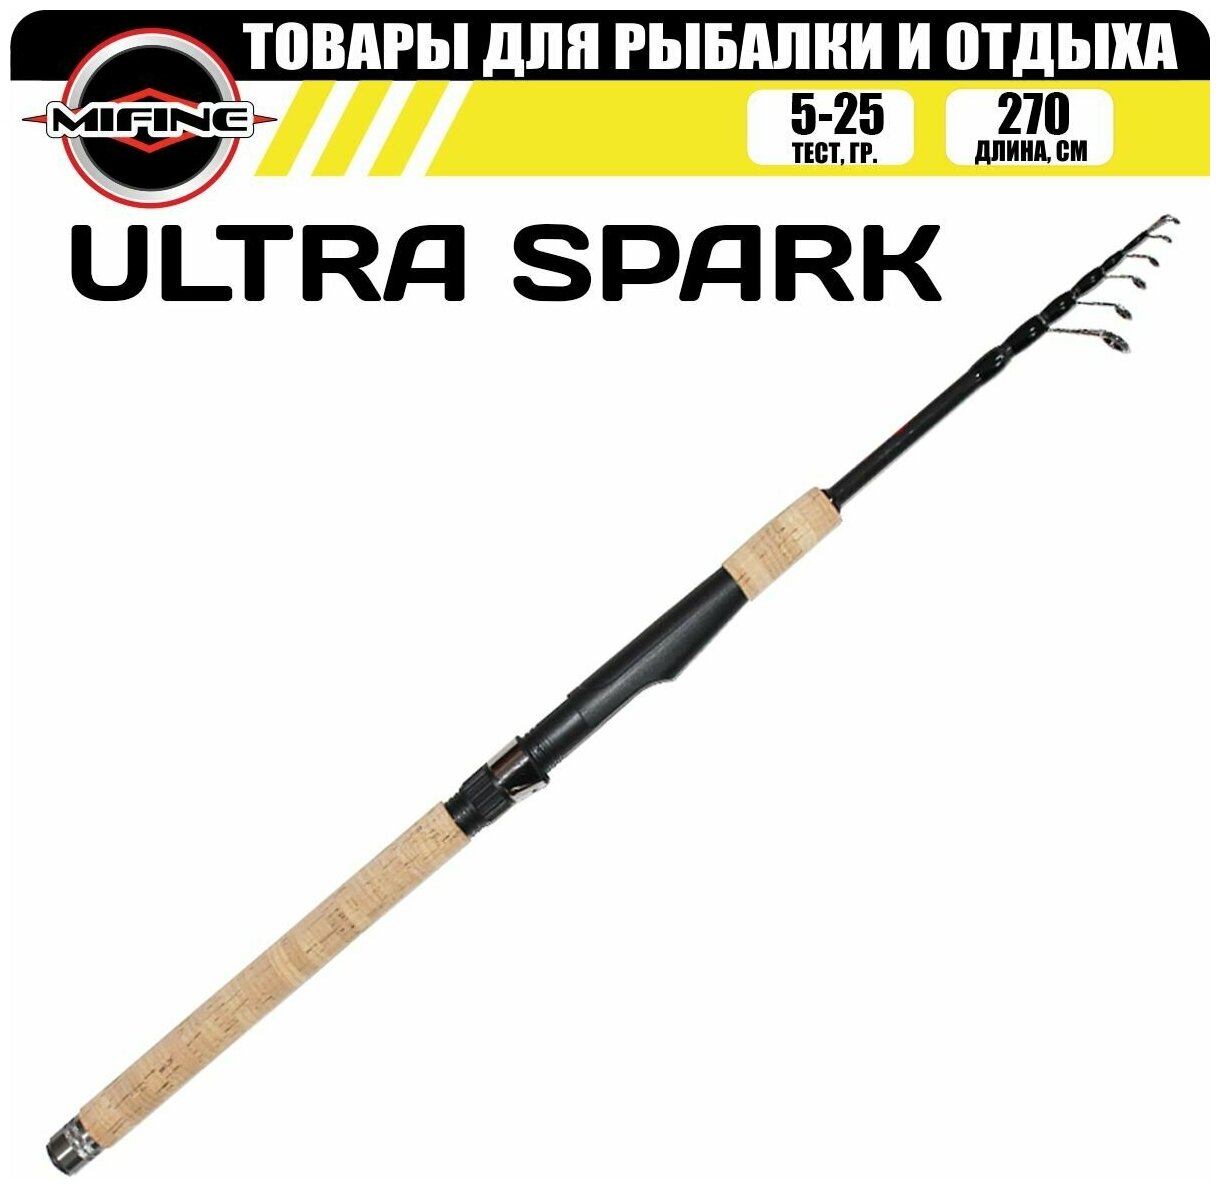 Спиннинг MIFINE ULTRA SPARK телескопический 2.7м (5-25гр), для рыбалки, рыболовный